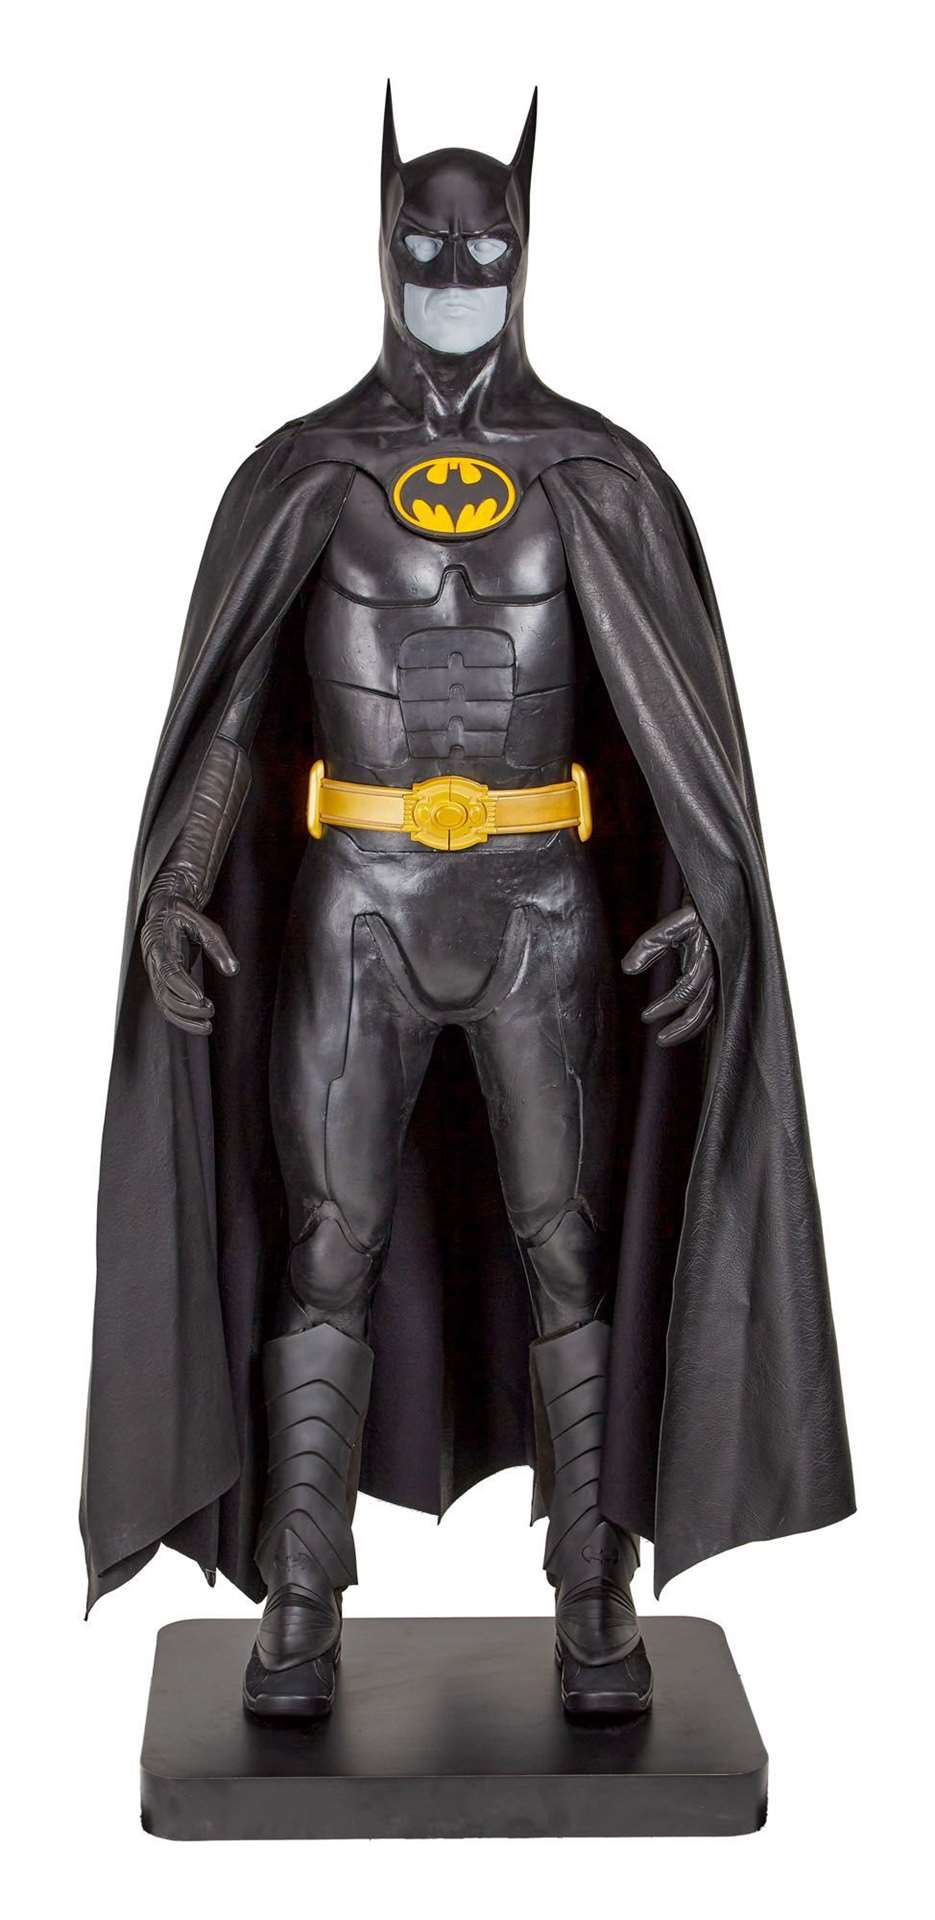 Batman costume (Julien’s Auctions/PA)